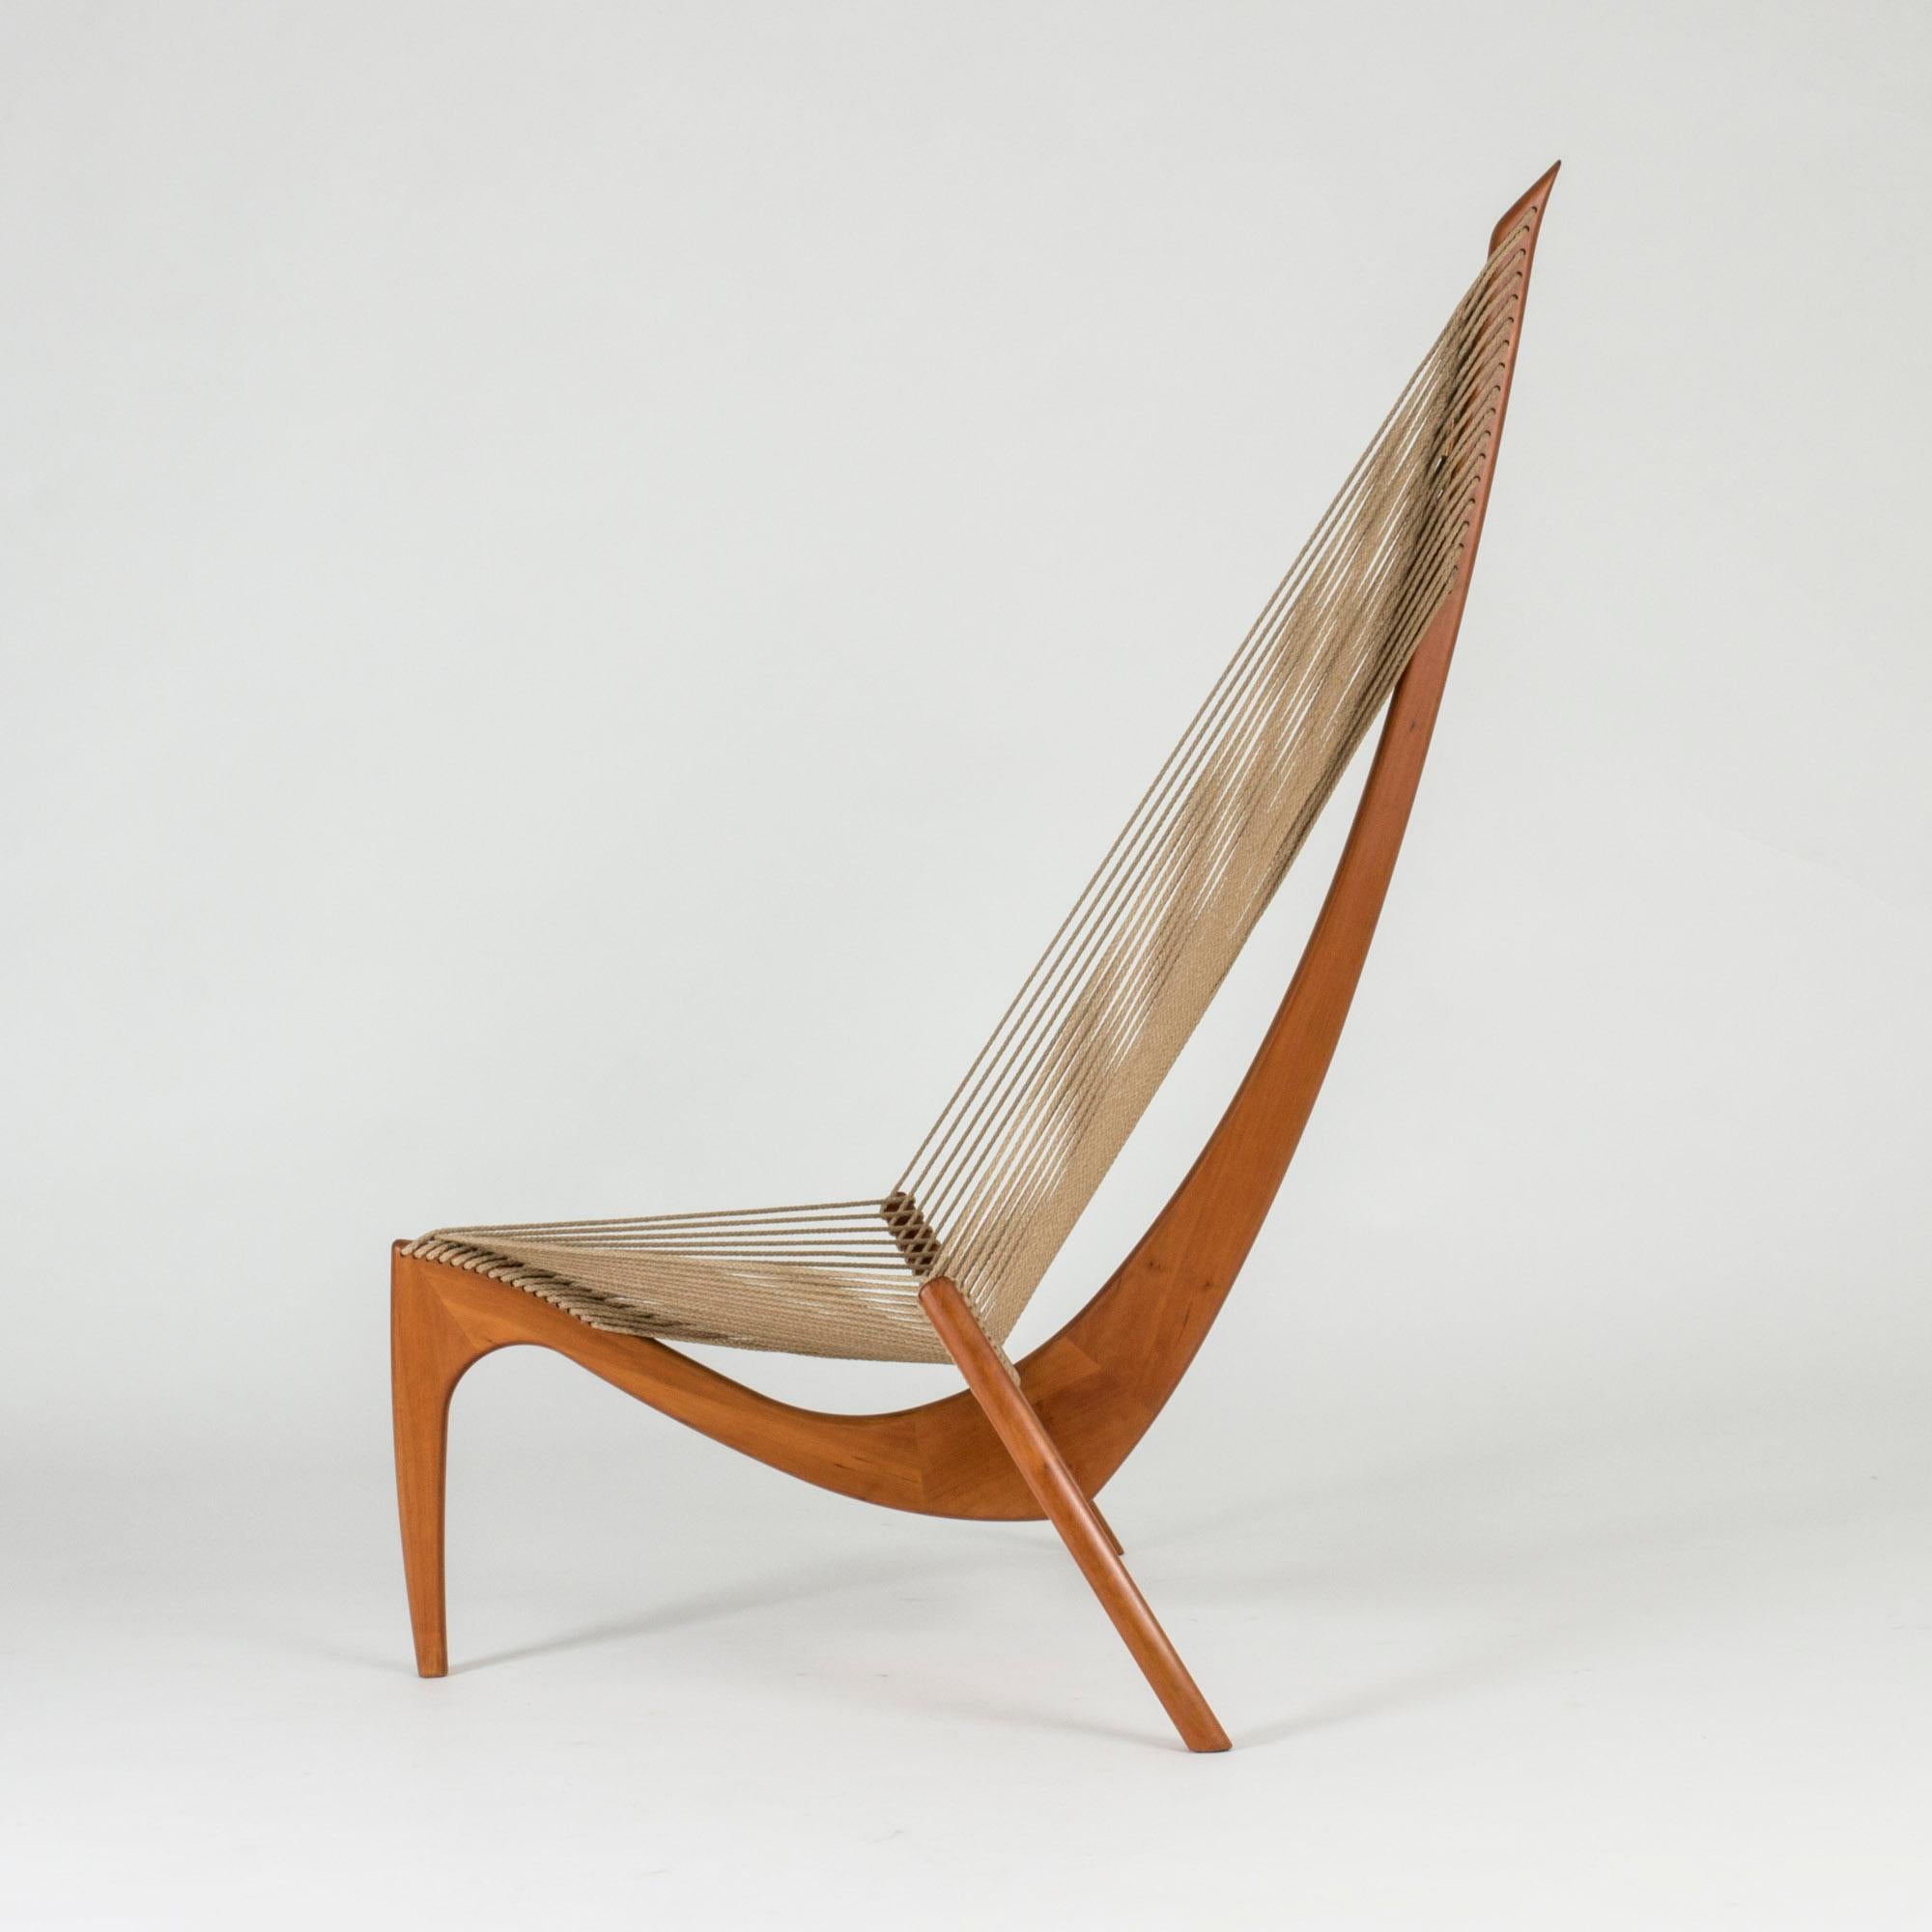 Scandinavian Modern “Harp Chair” by Jørgen Høvelskov